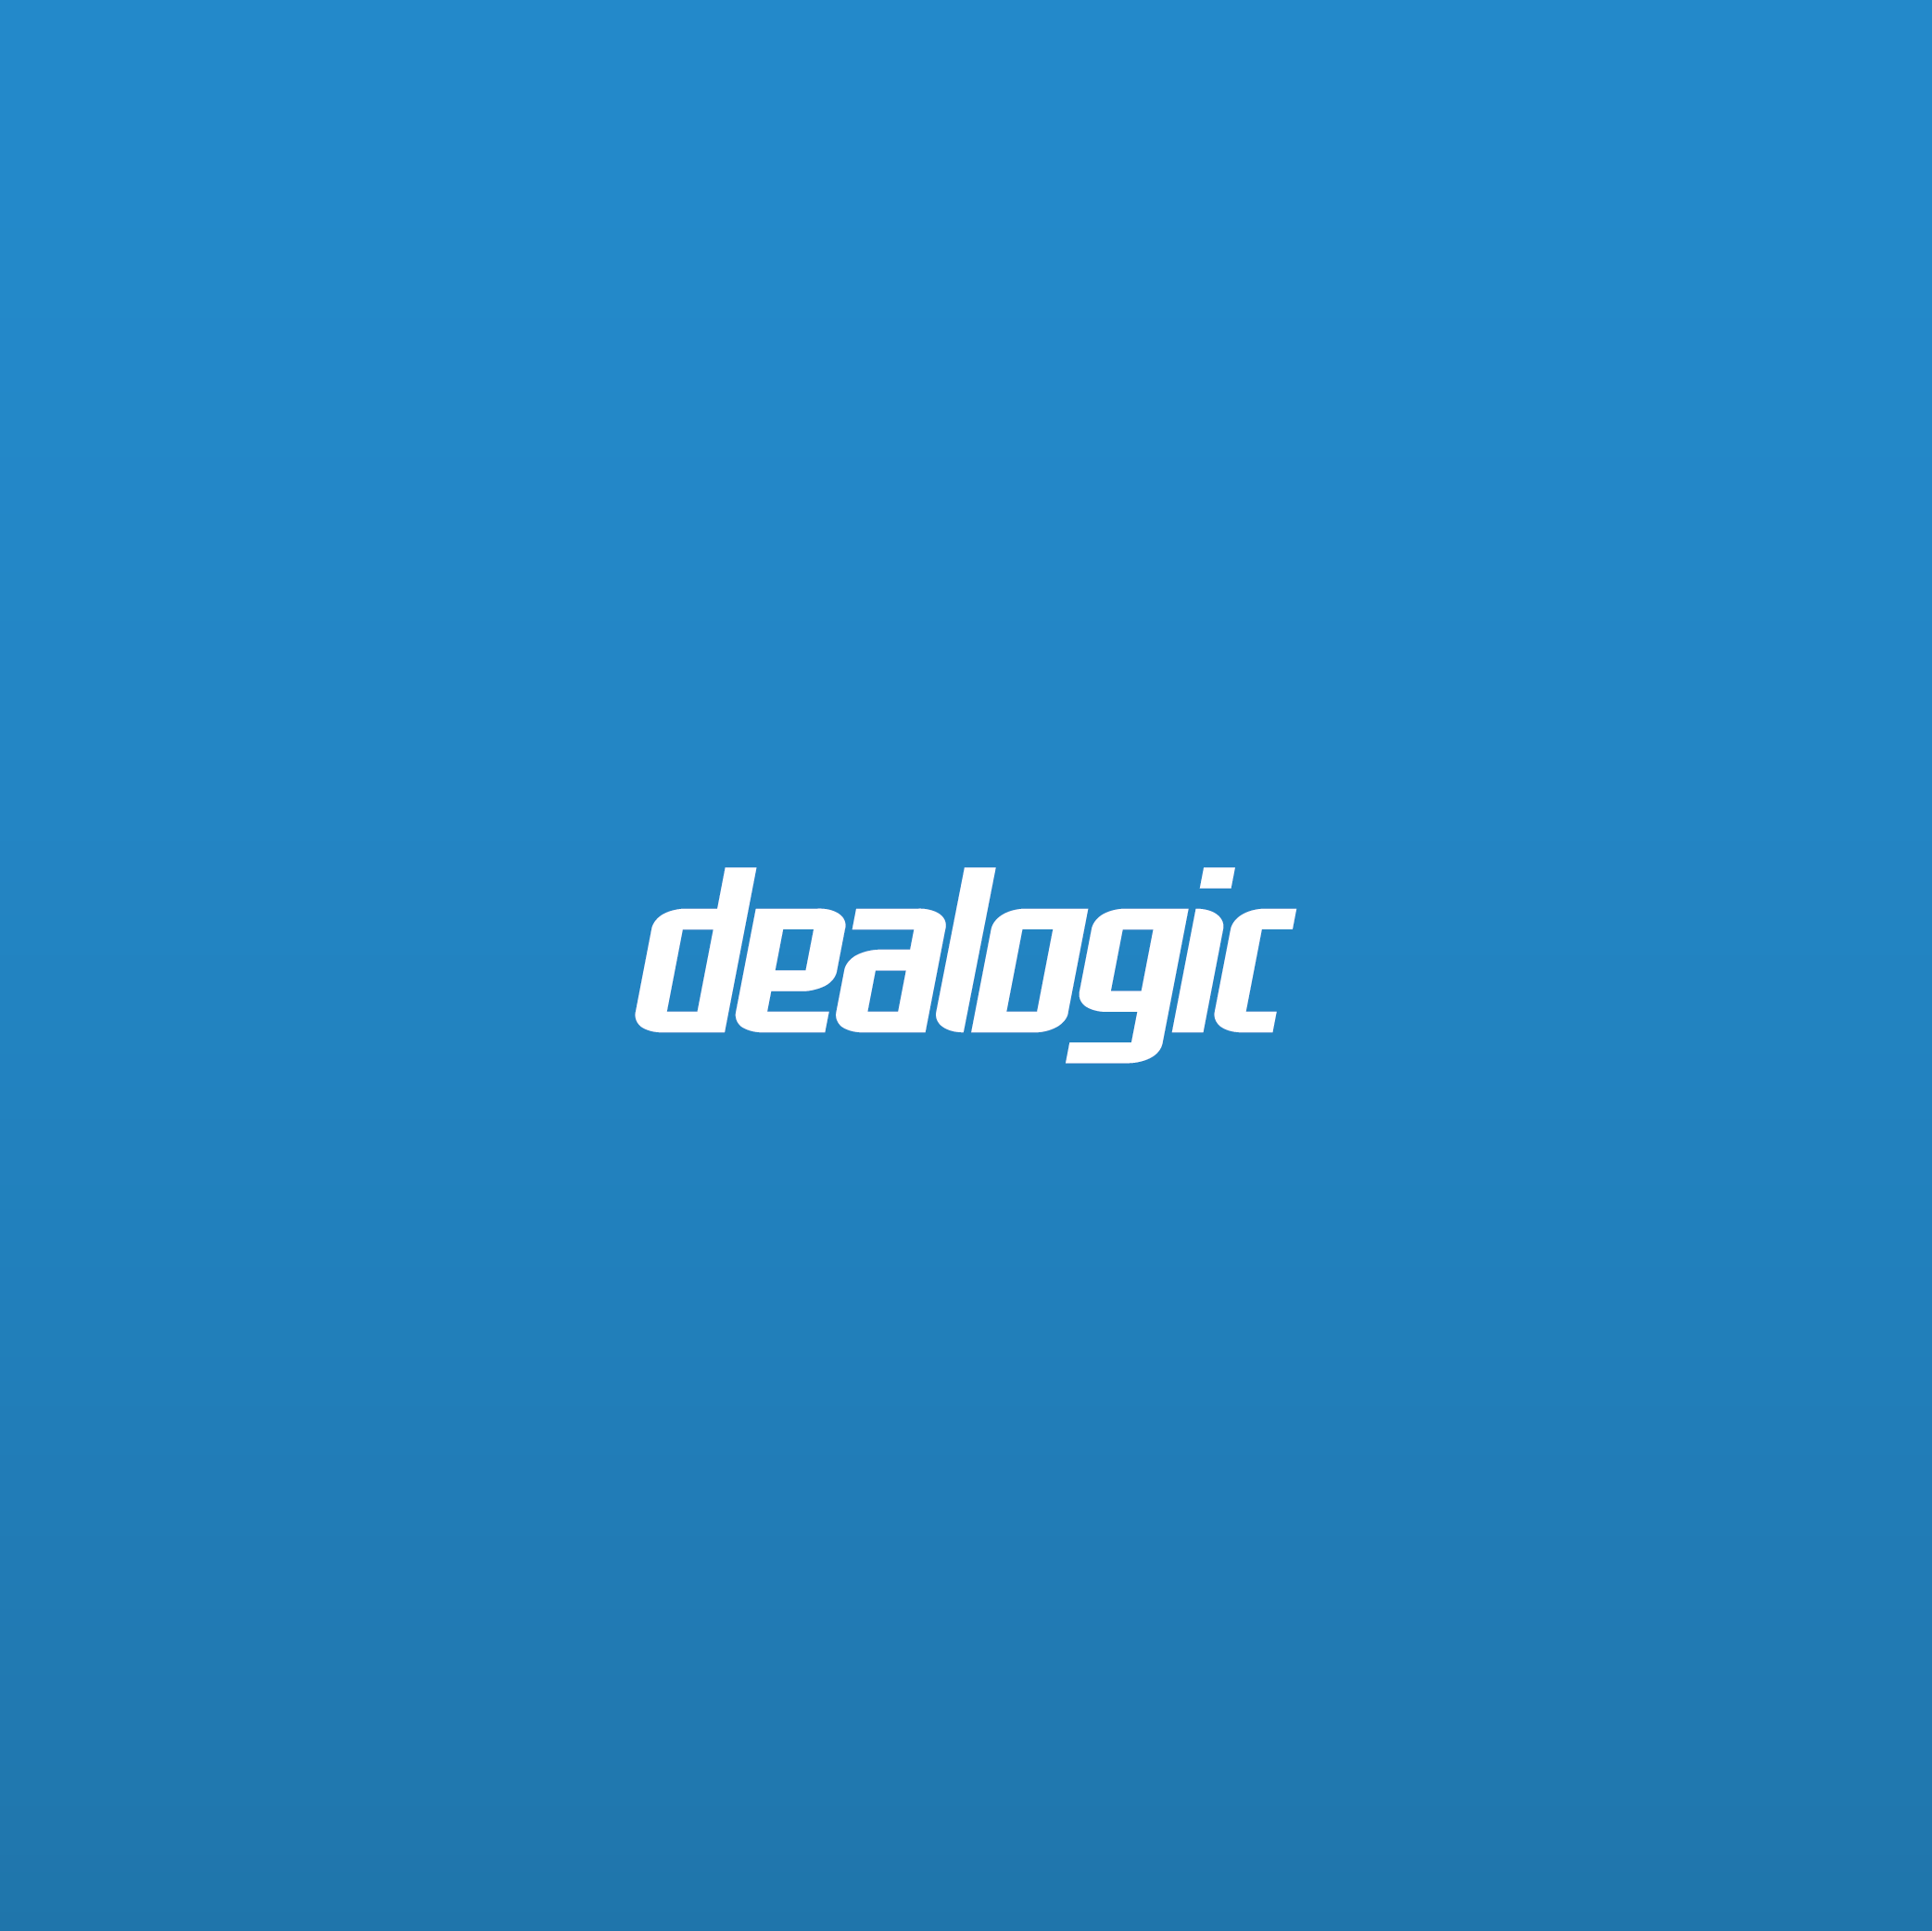 Dealogic branding